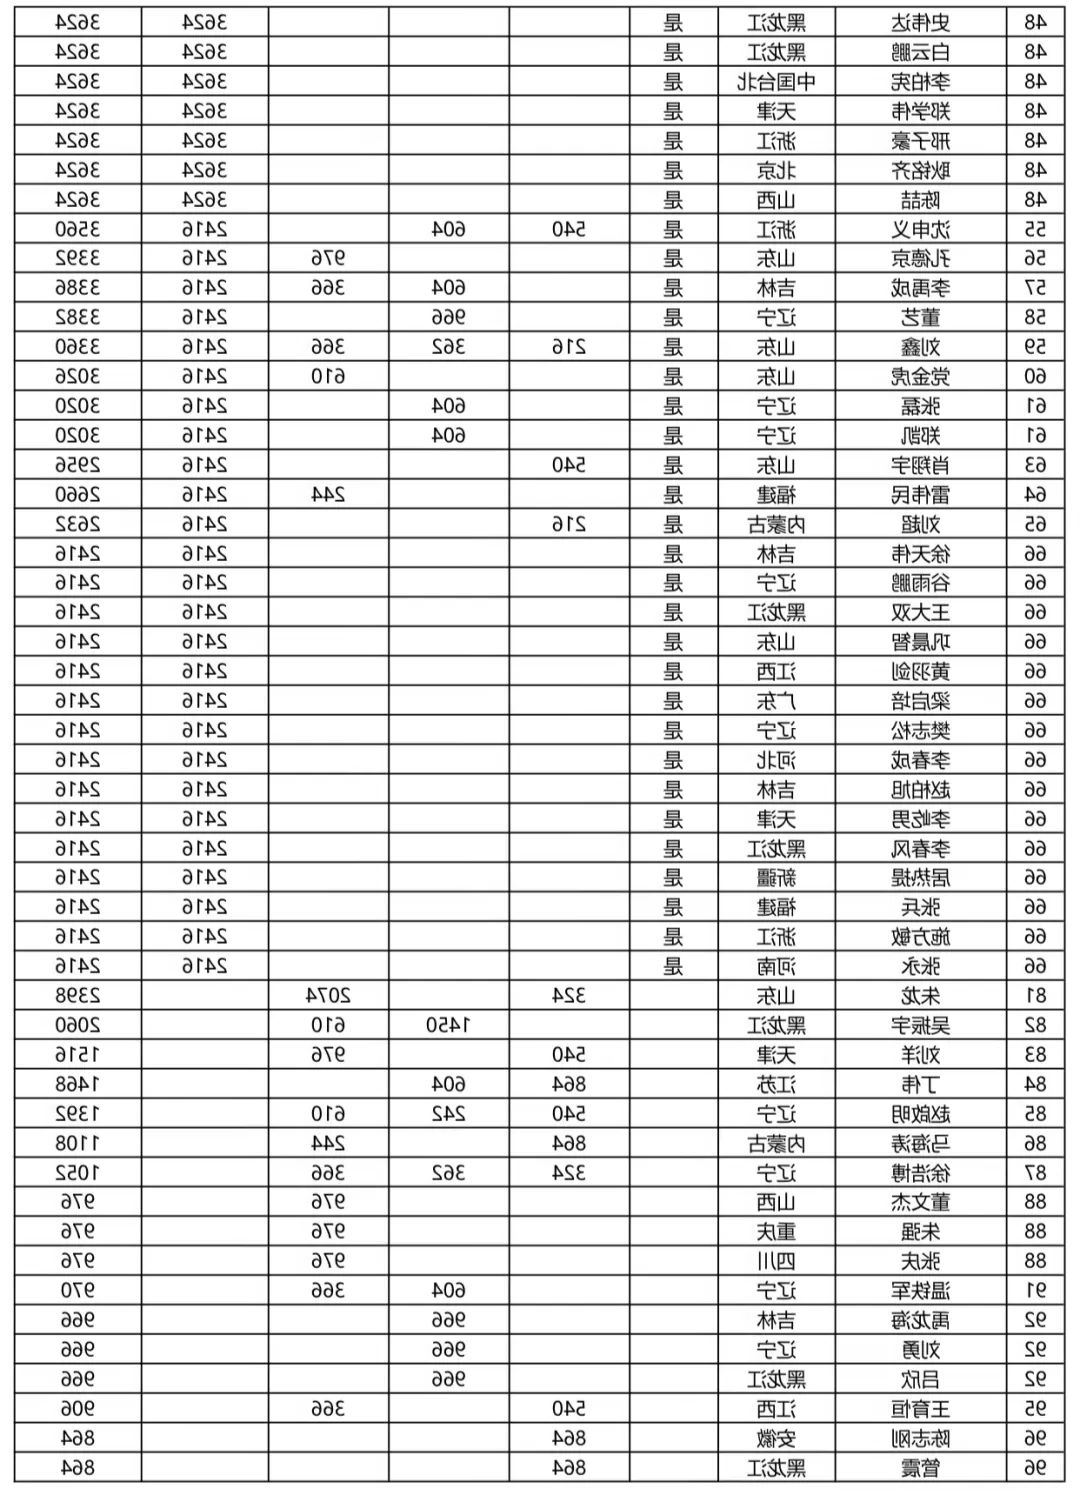 【重要】最新CBSA中式台球男子排名（截至中国公开赛）